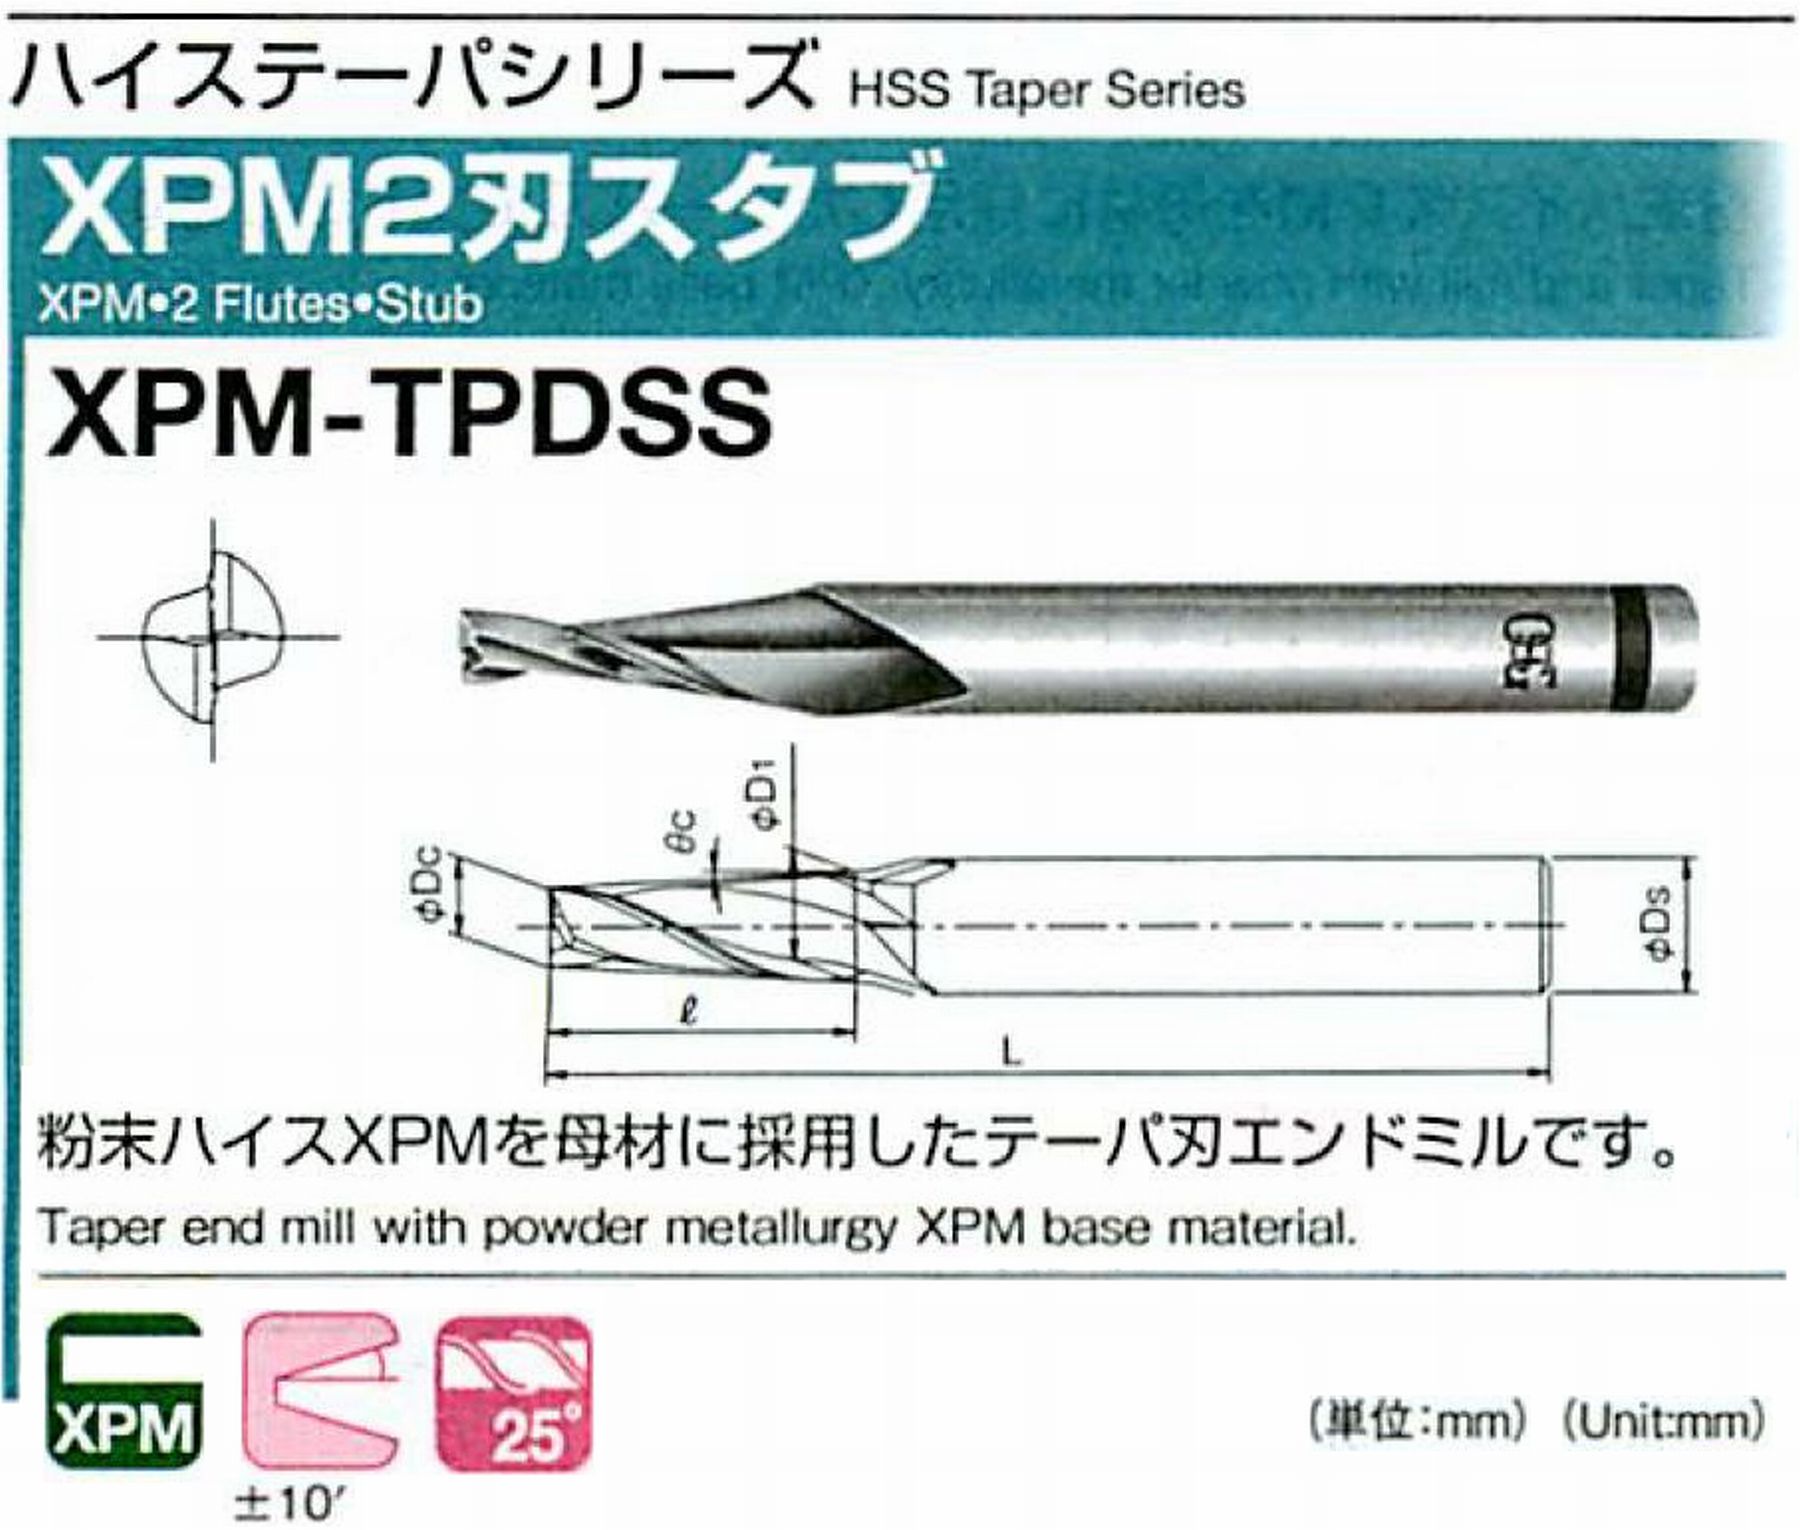 オーエスジー/OSG XPM2刃スタブ XPM-TPDSS 外径×刃部テーパ半角4×0.5° 全長52 刃長8 シャンク径6mm 大端径4.14